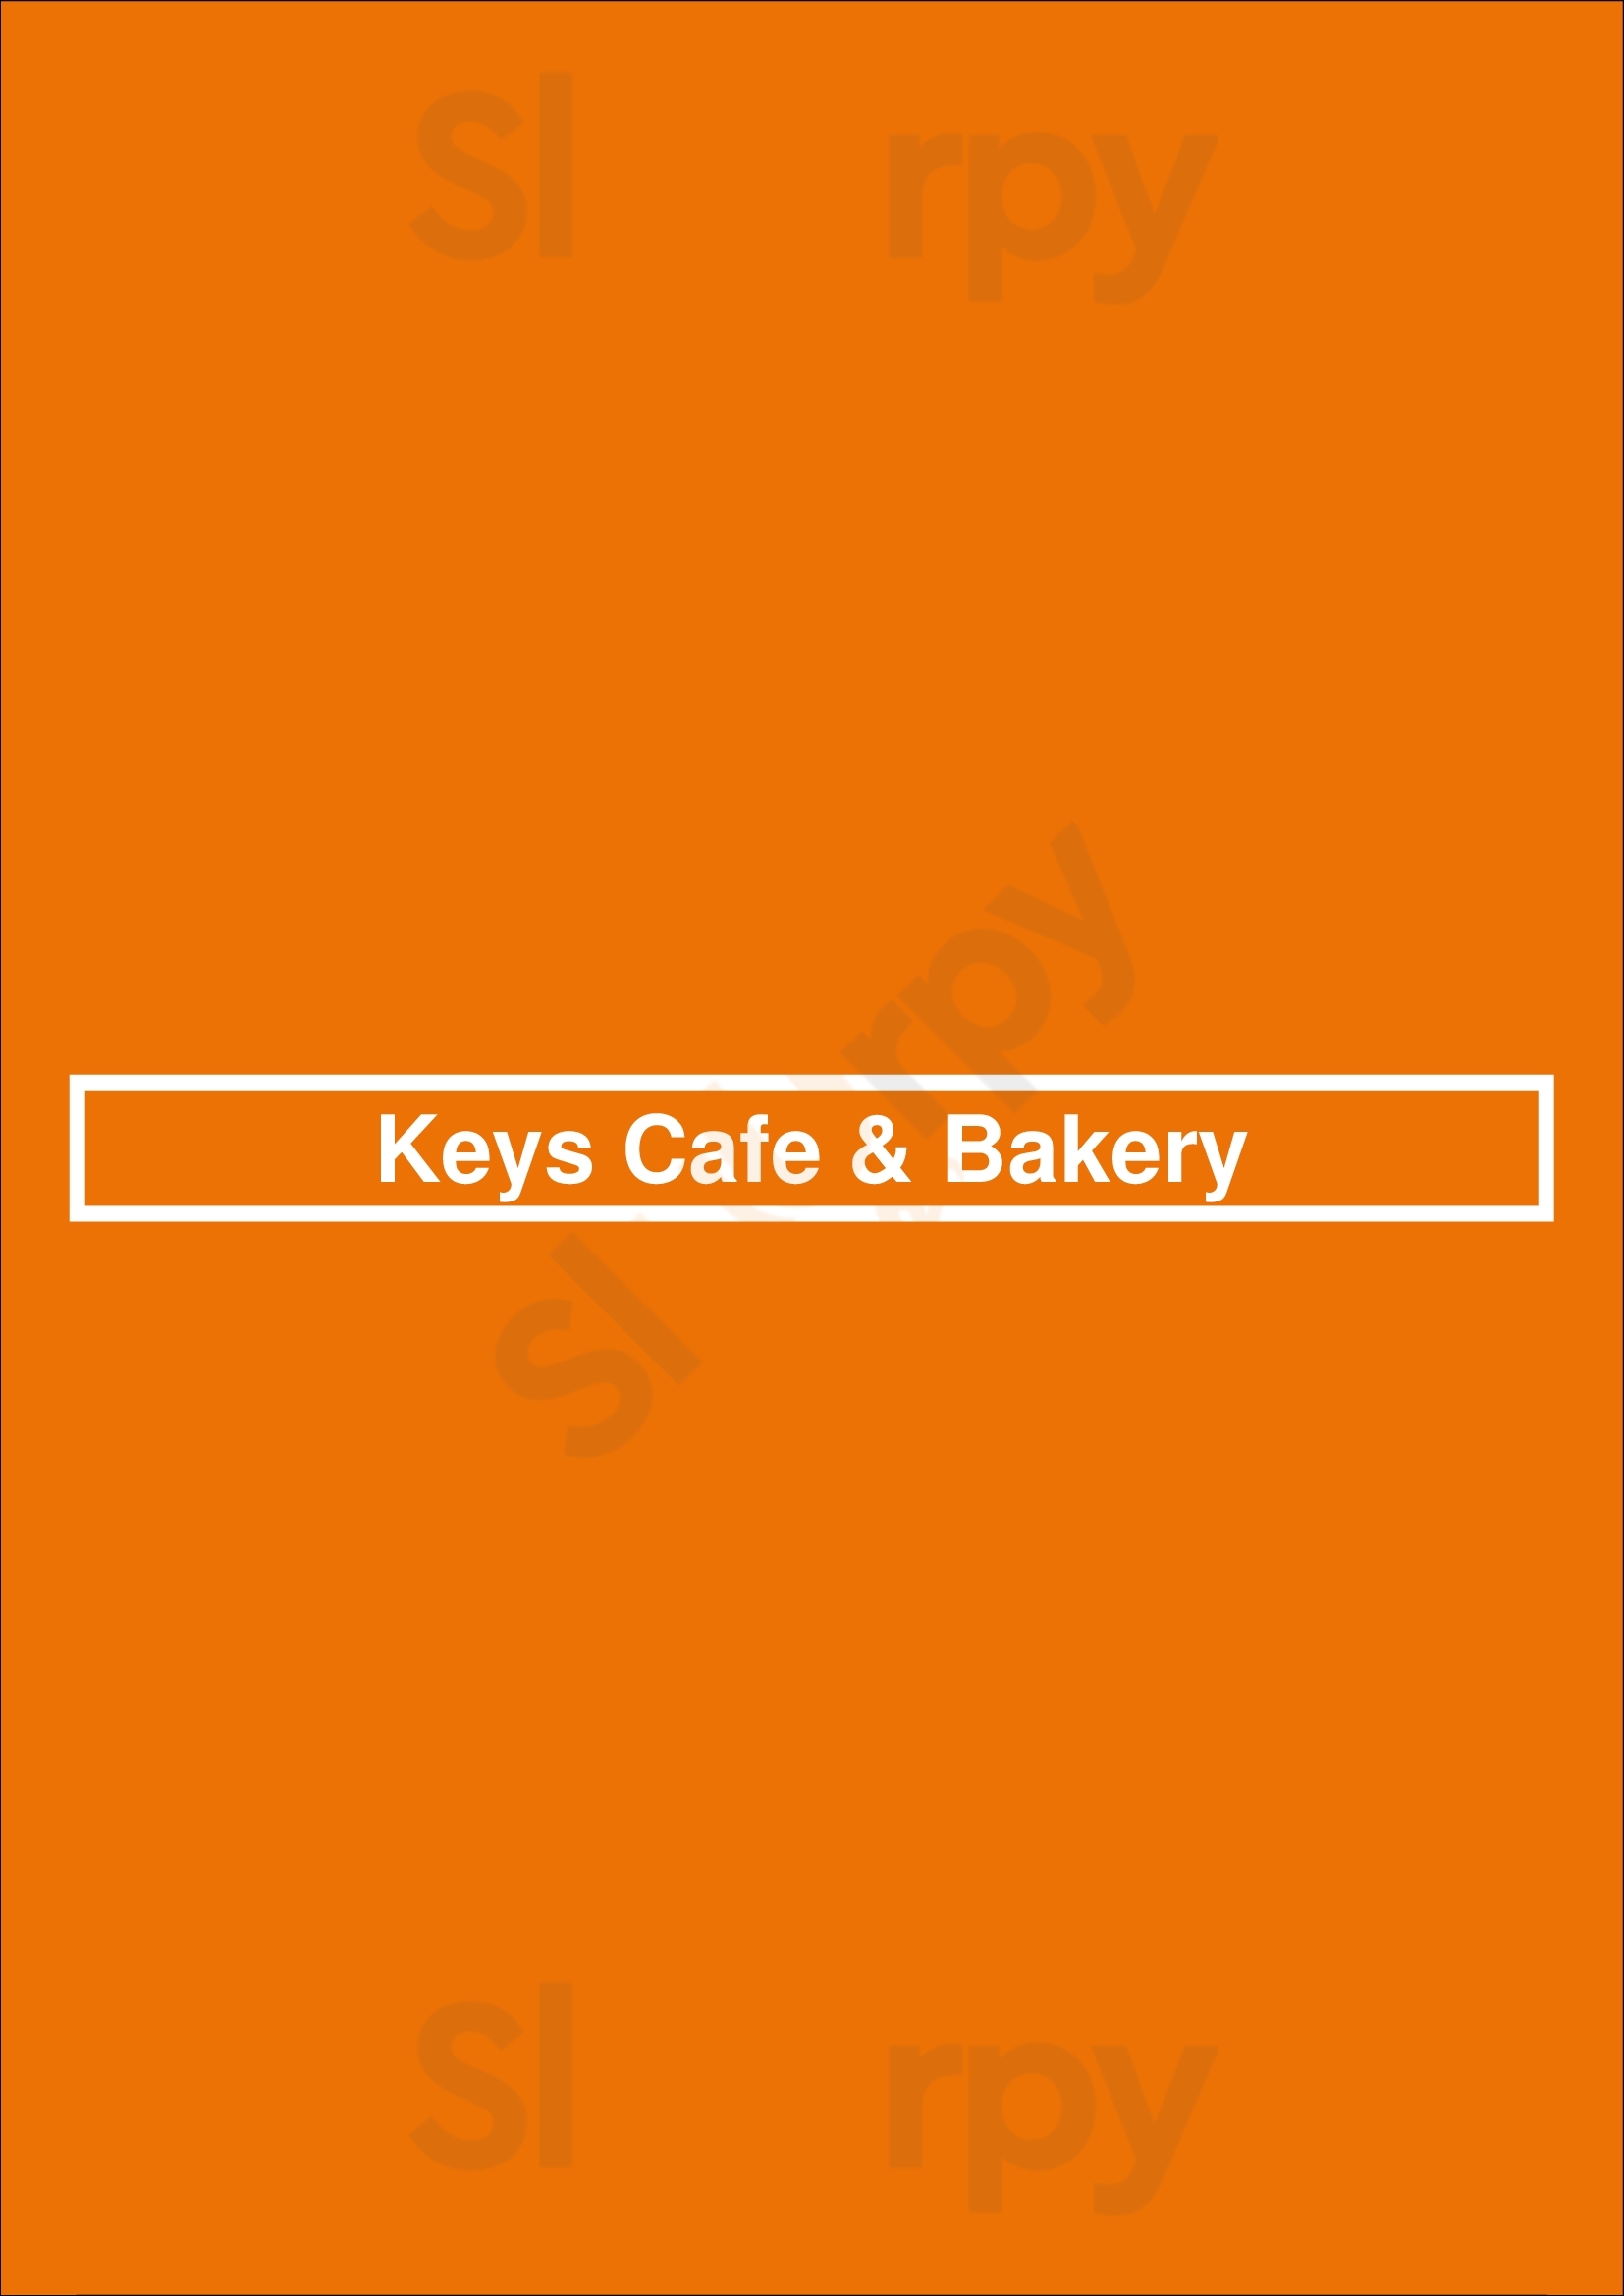 Keys Cafe & Bakery Saint Paul Menu - 1